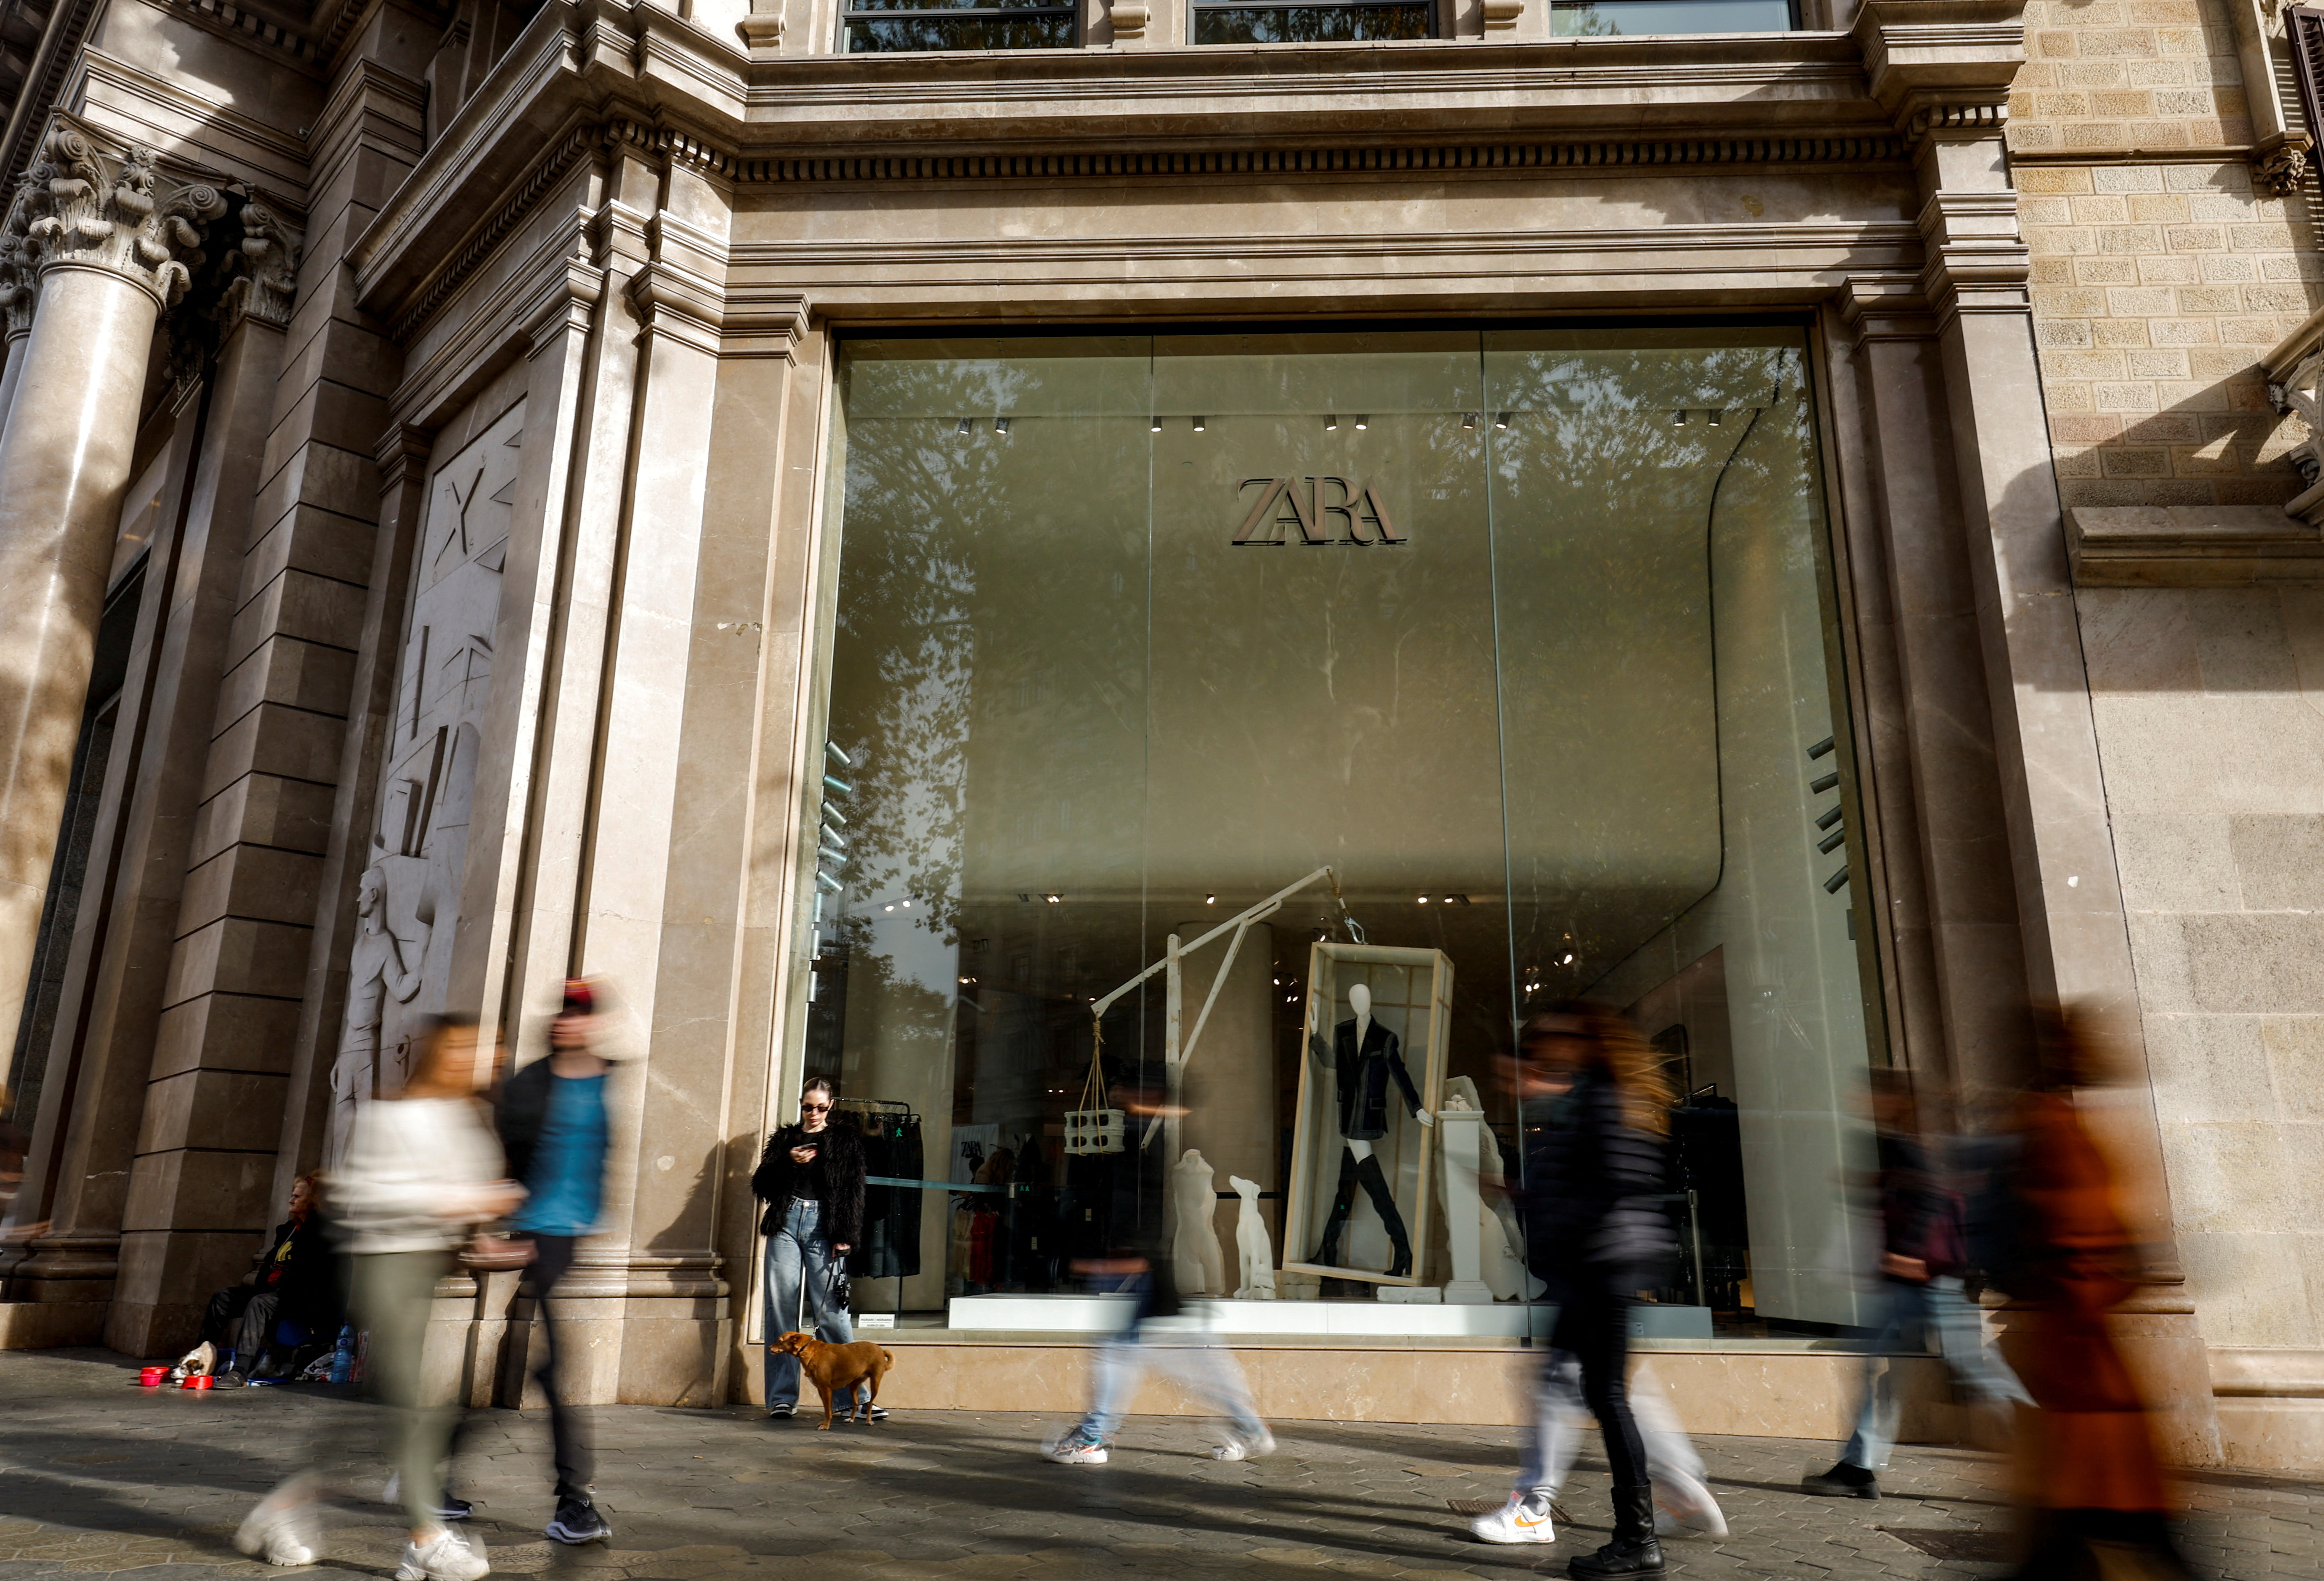 People walk past a Zara shop window at Passeig de Gracia in Barcelona